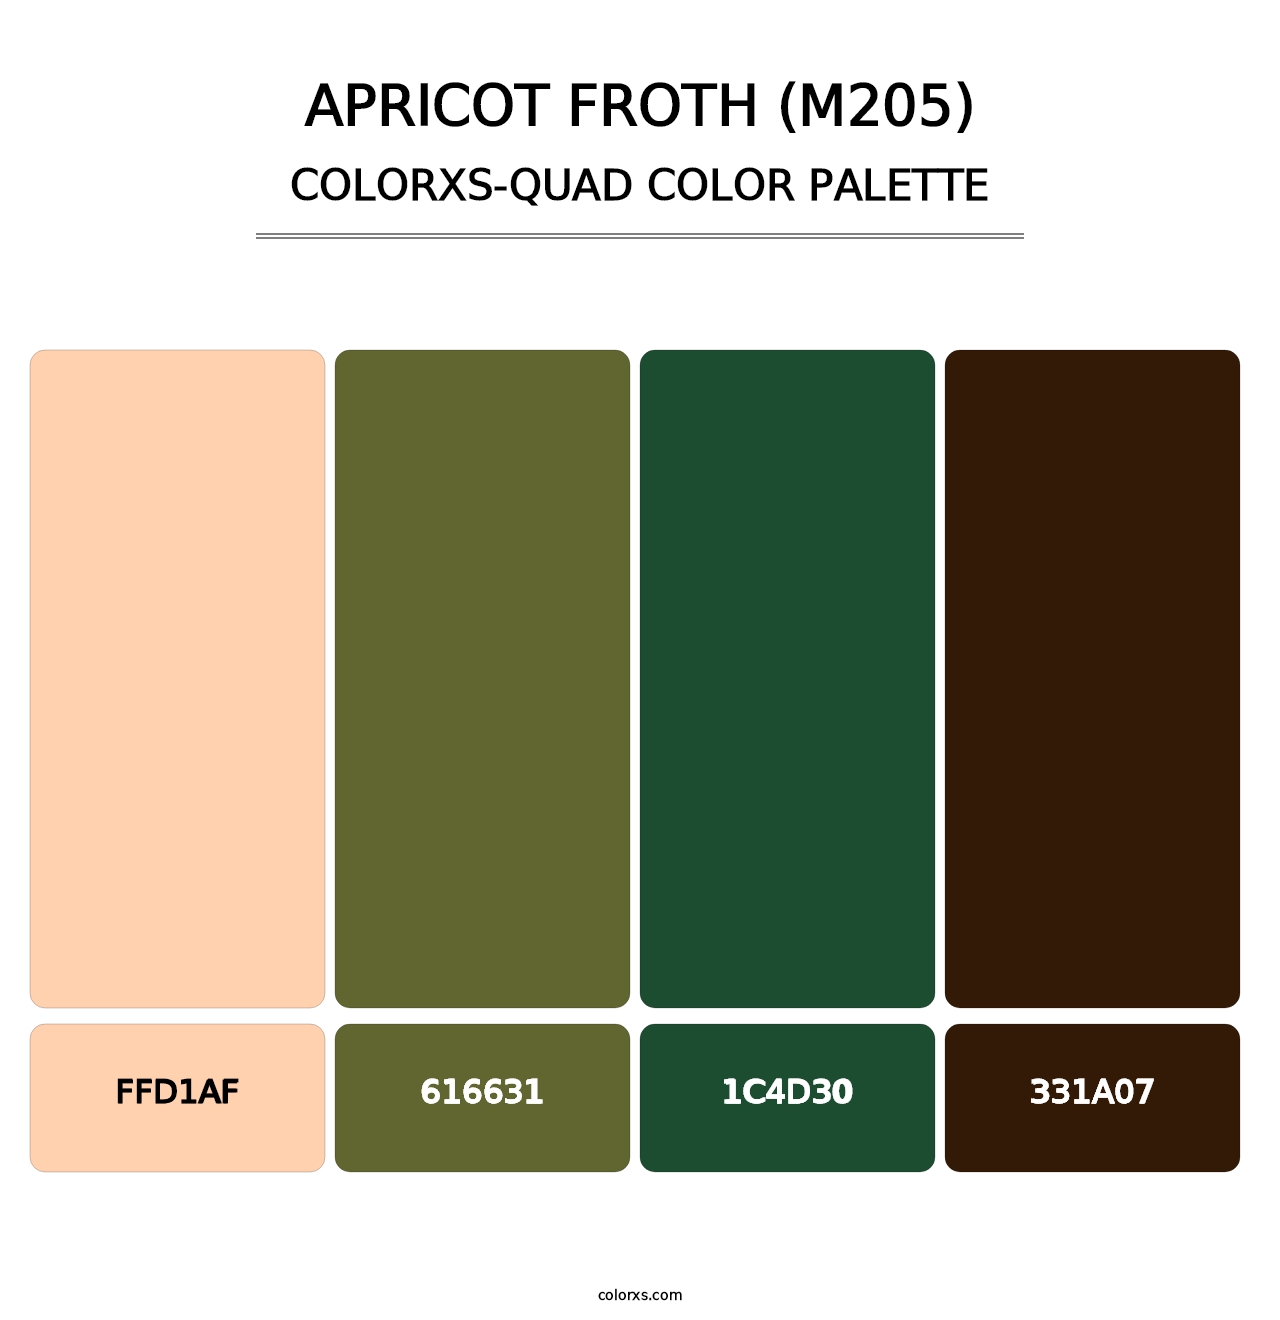 Apricot Froth (M205) - Colorxs Quad Palette